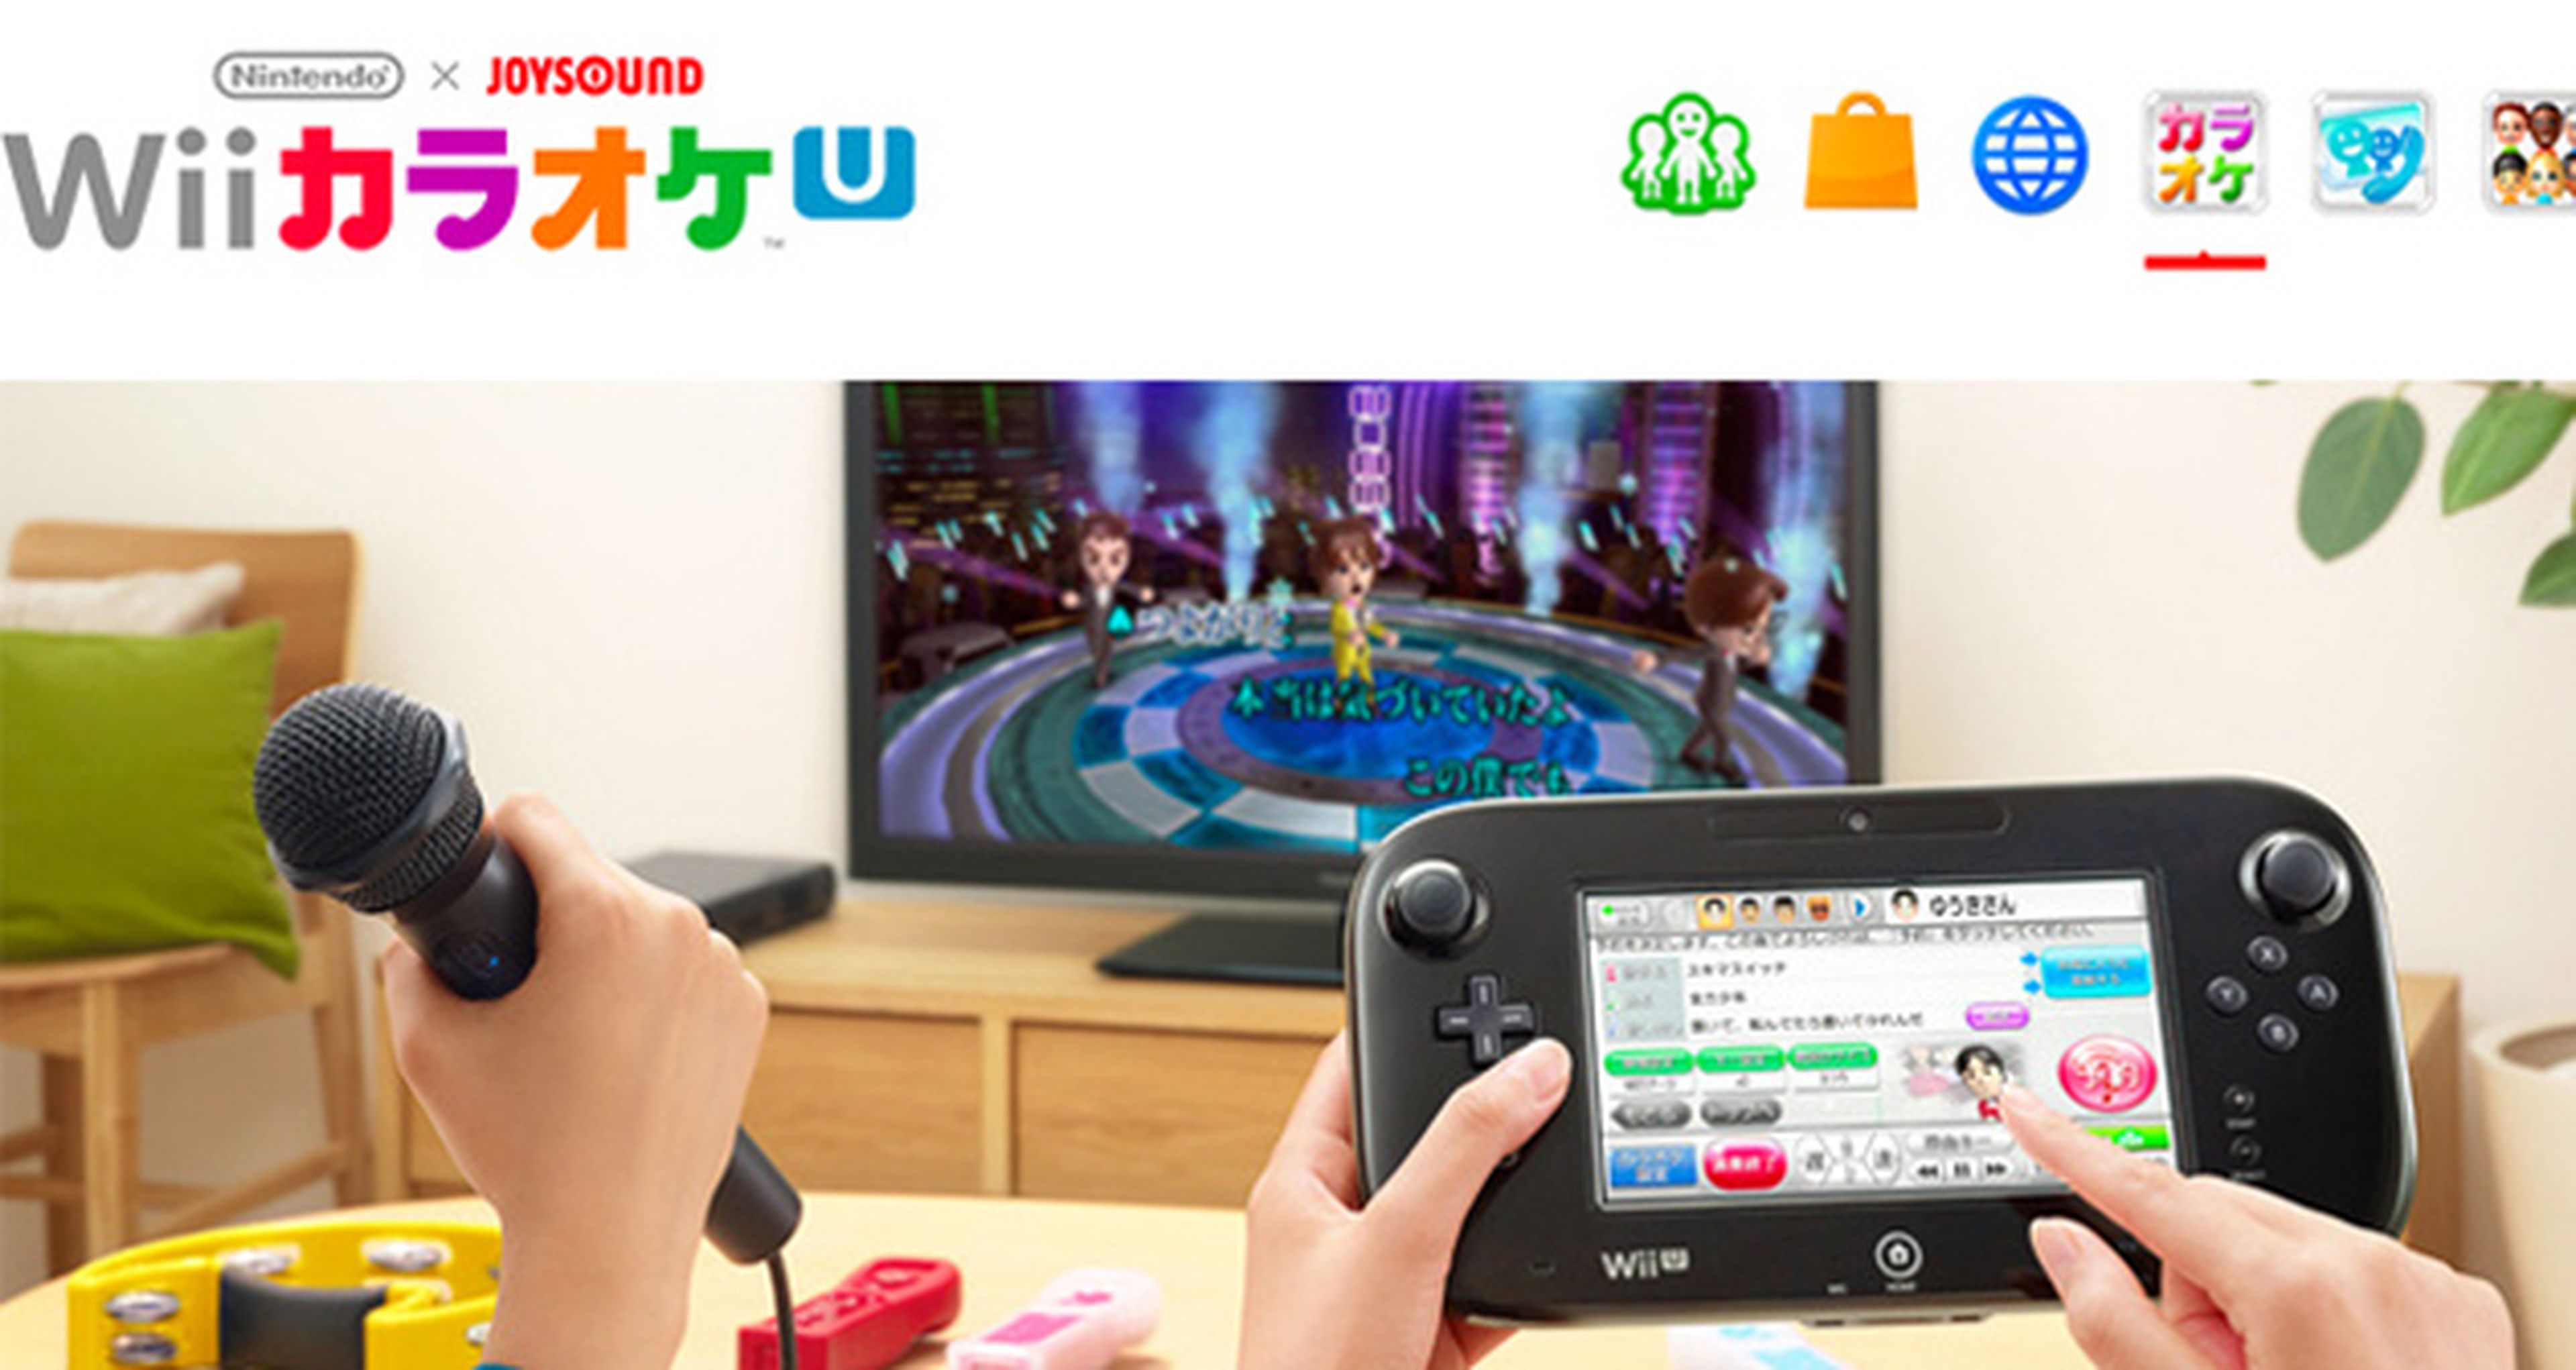 Wii Karaoke U by Joysound dará el cante en Wii U en 2013